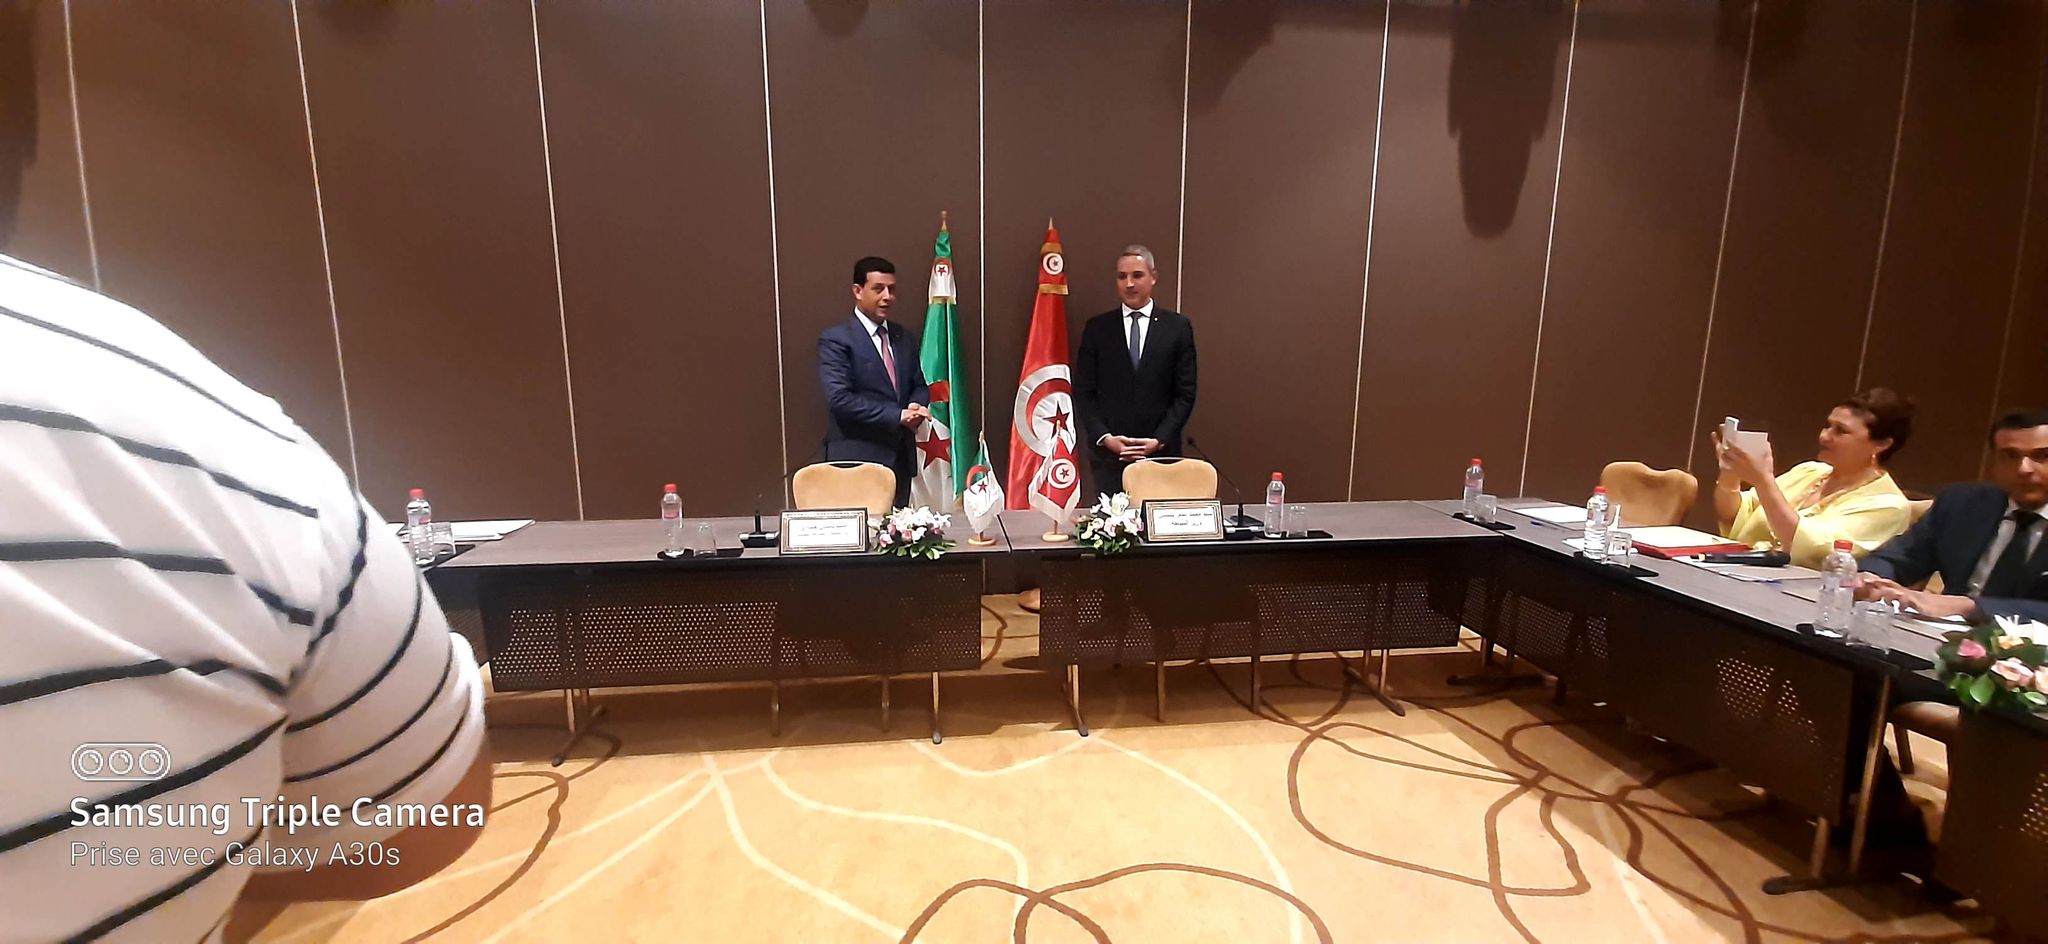 وزير السياحة  الجزائري لـ "الصباح نيوز":  الجديد في هذه الدورة تحديد سقف زمني لتفعيل الاتفاقيات بين تونس والجزائر